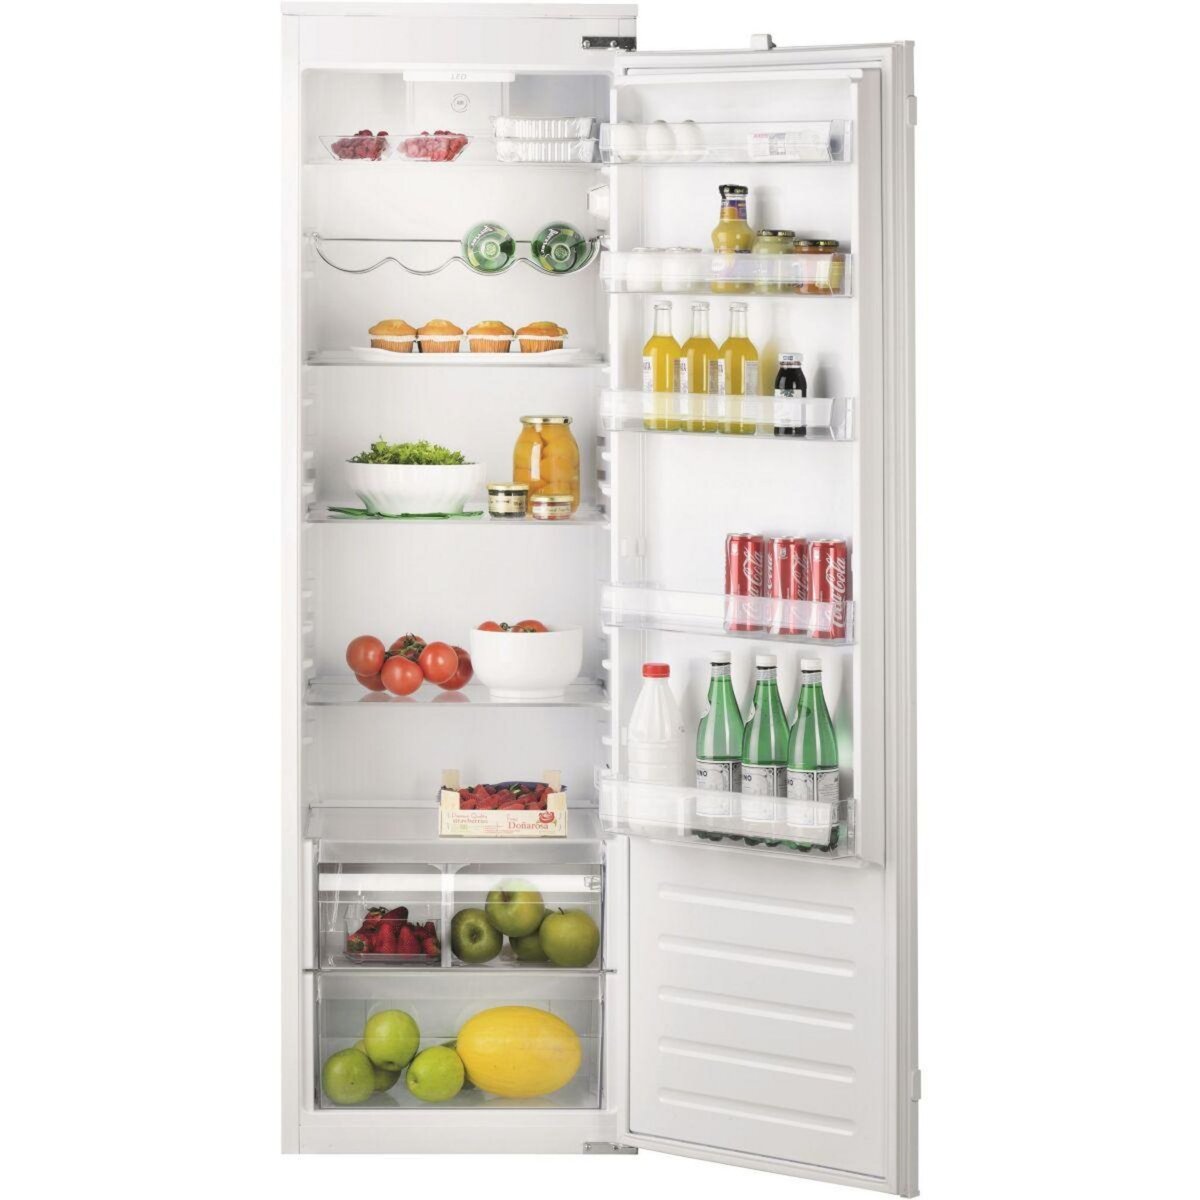 HAIER Réfrigérateur 1 porte encastrable HLE172 pas cher 